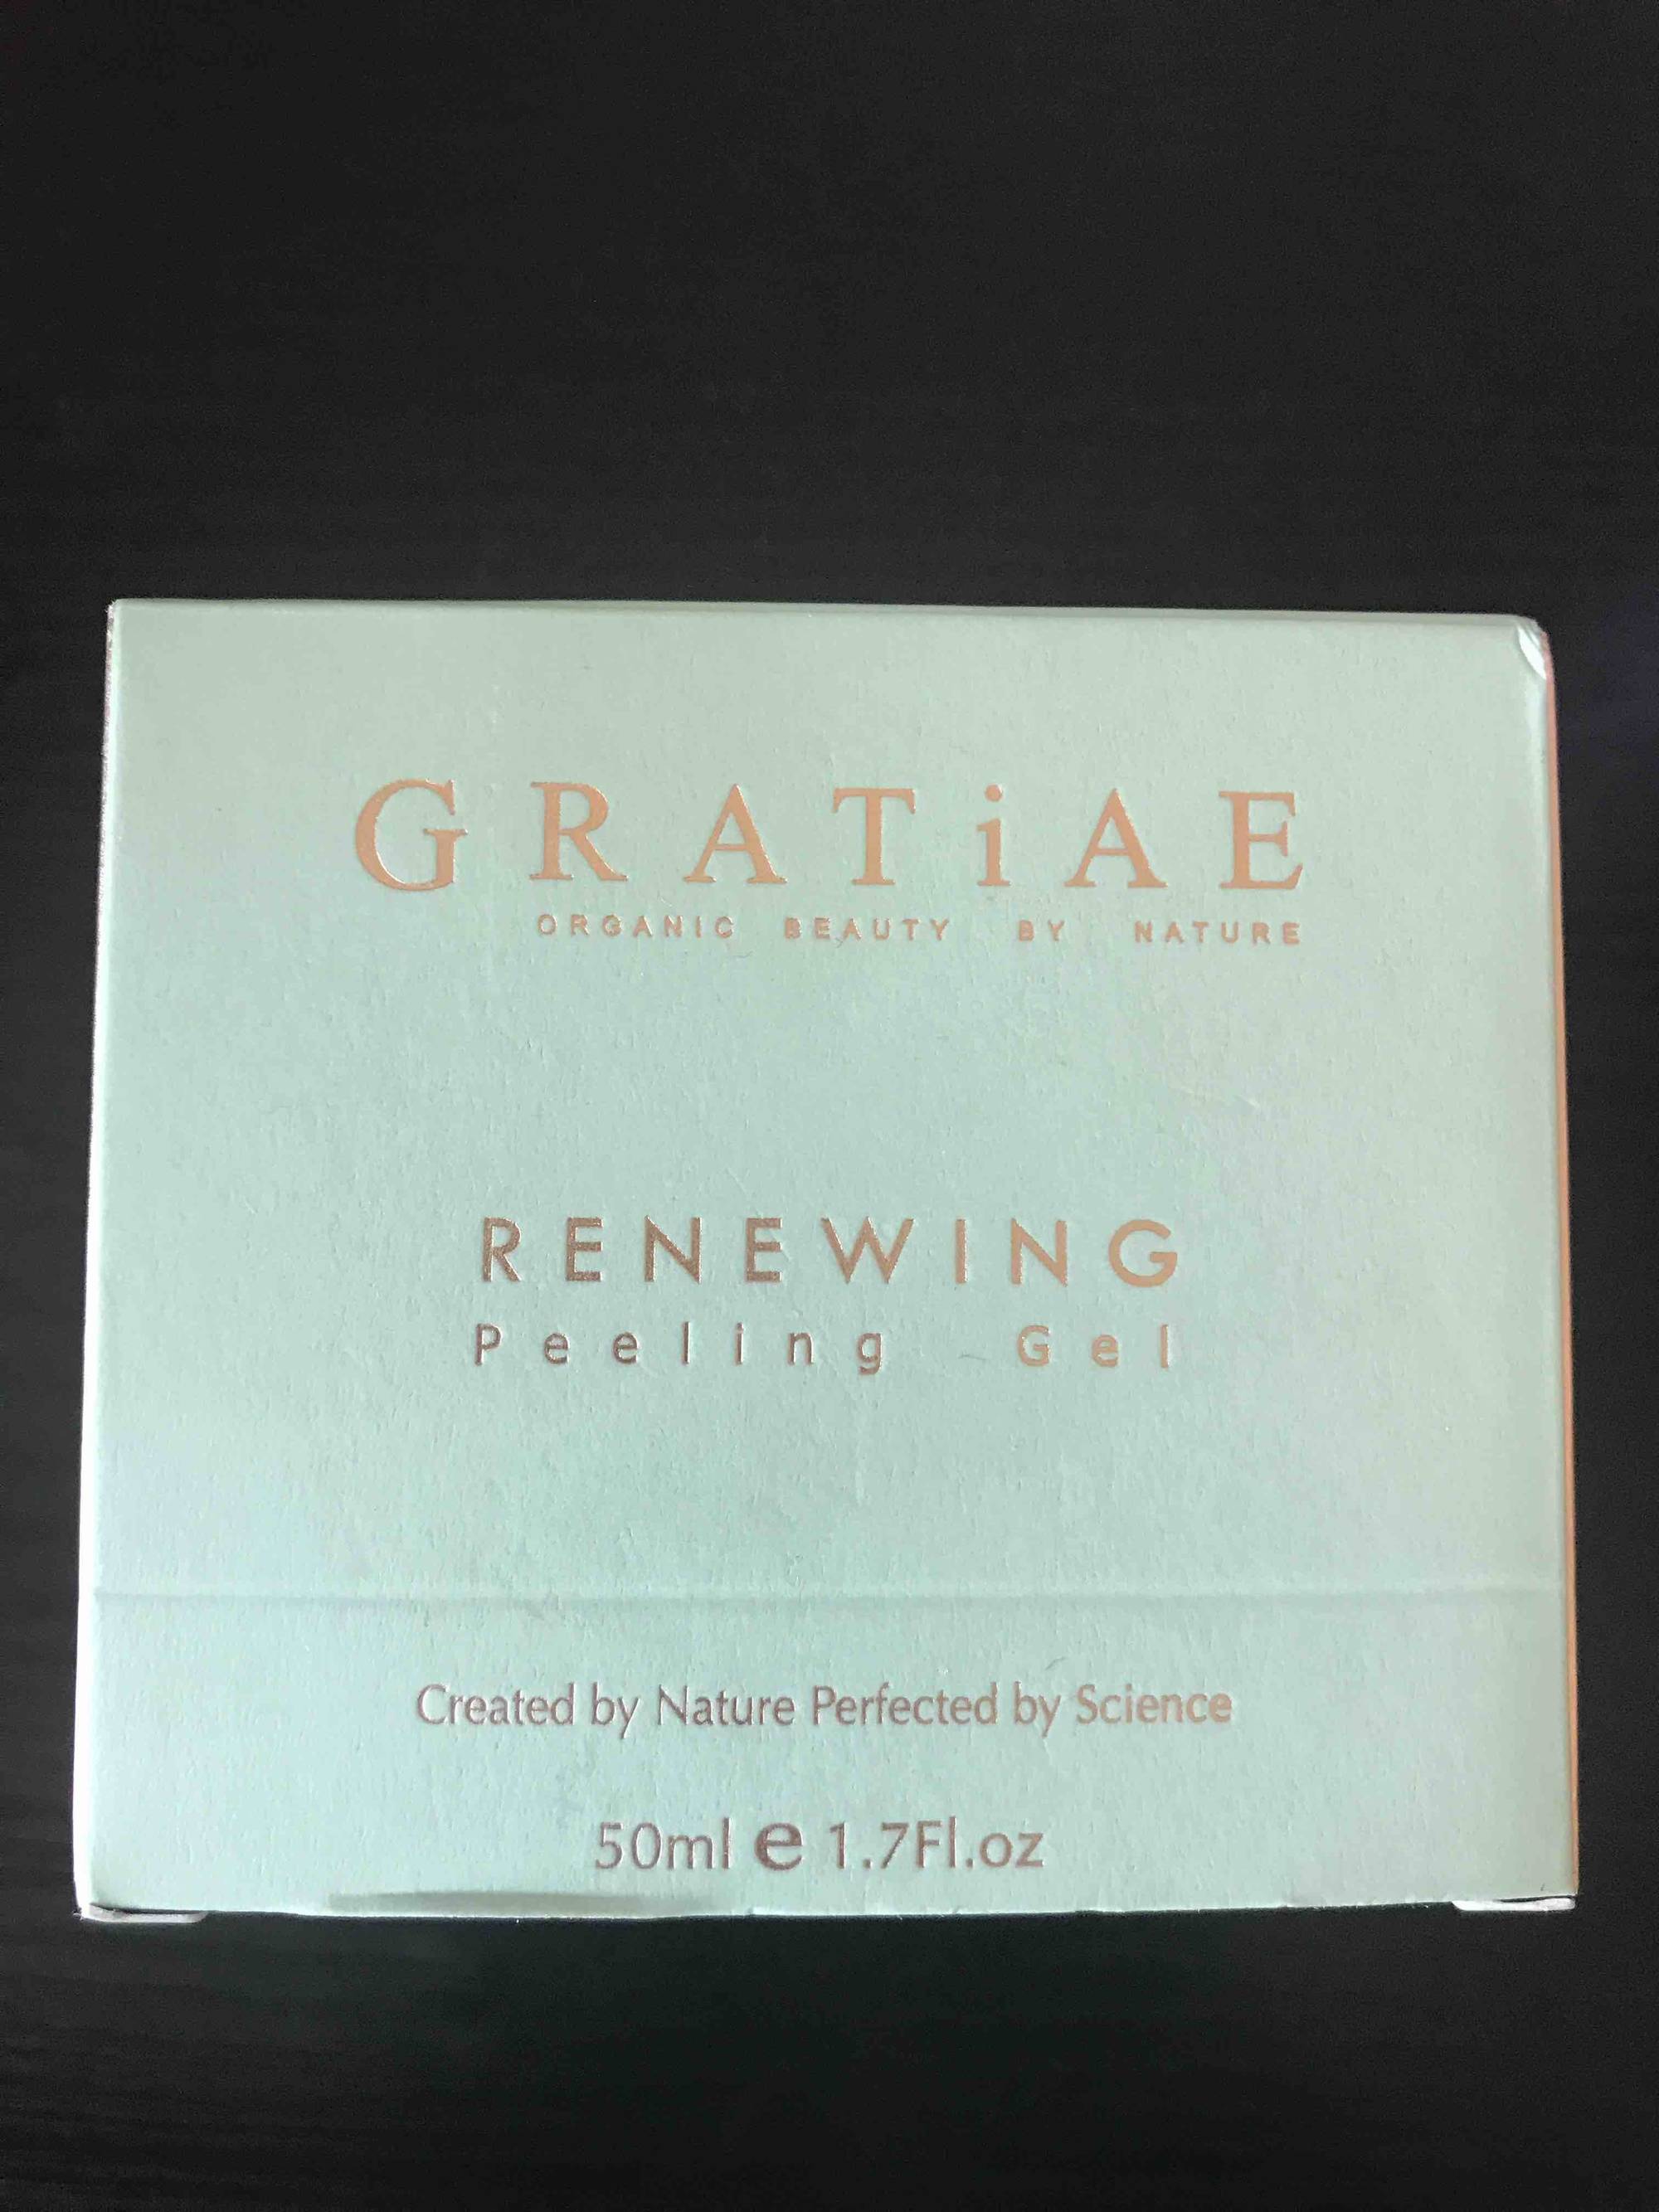 GRATIAE - Renewing - Peeling gel